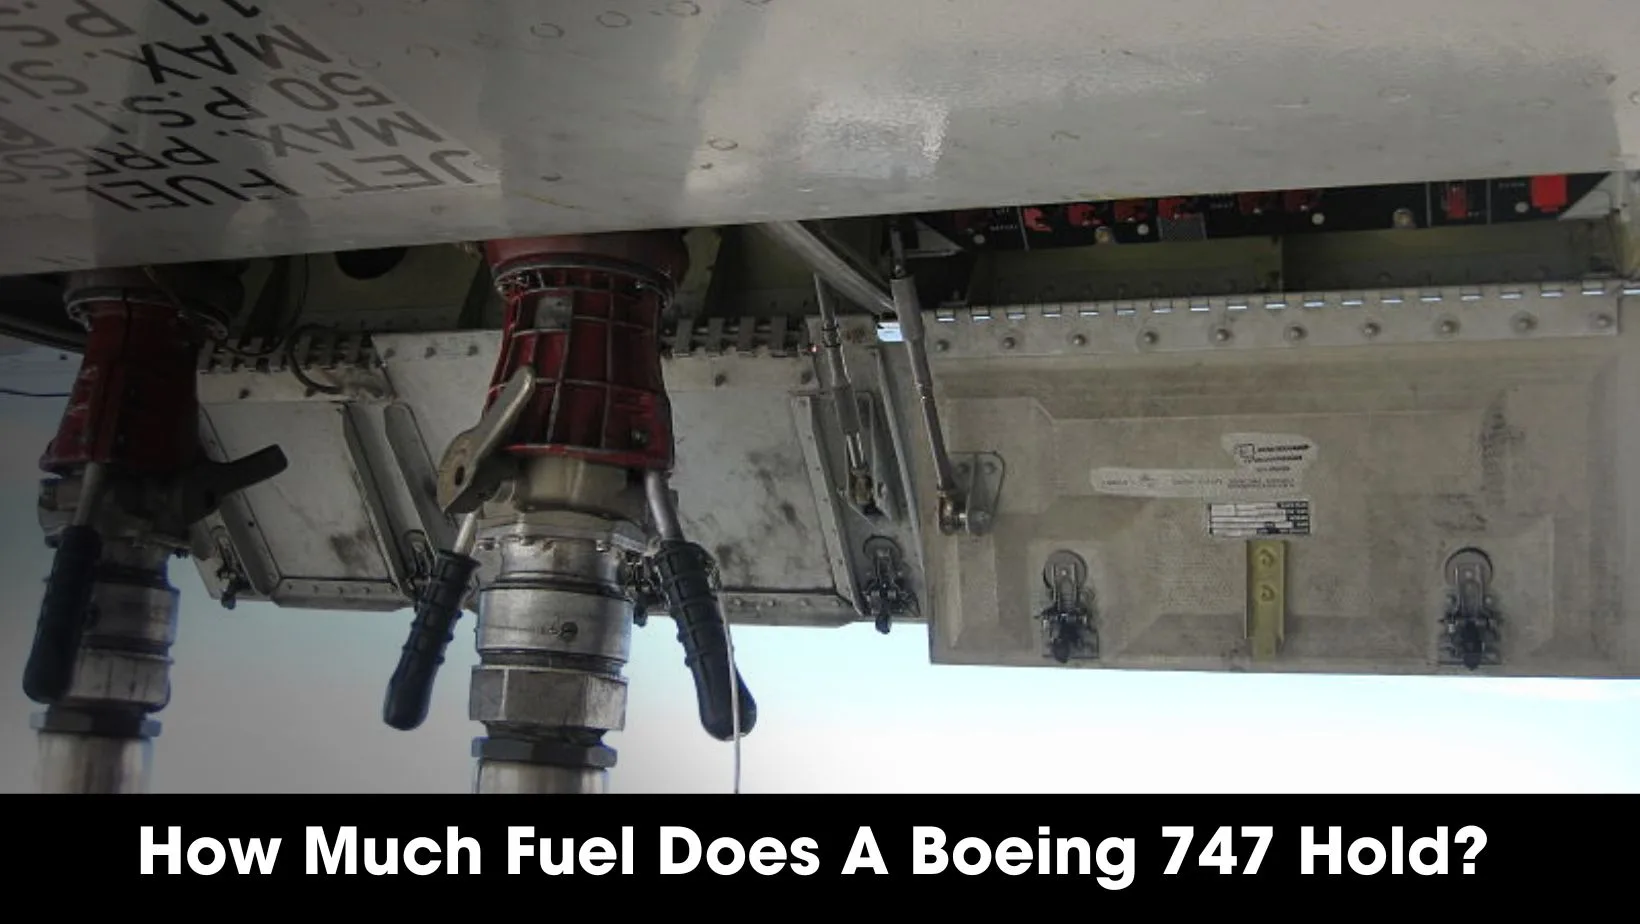 Boeing 747 fuel